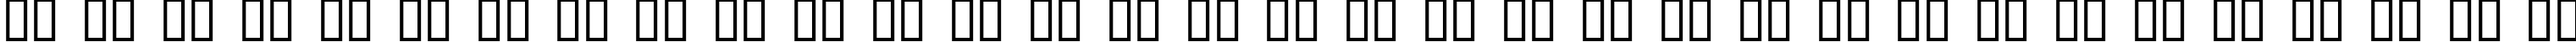 Пример написания русского алфавита шрифтом Abstrakt